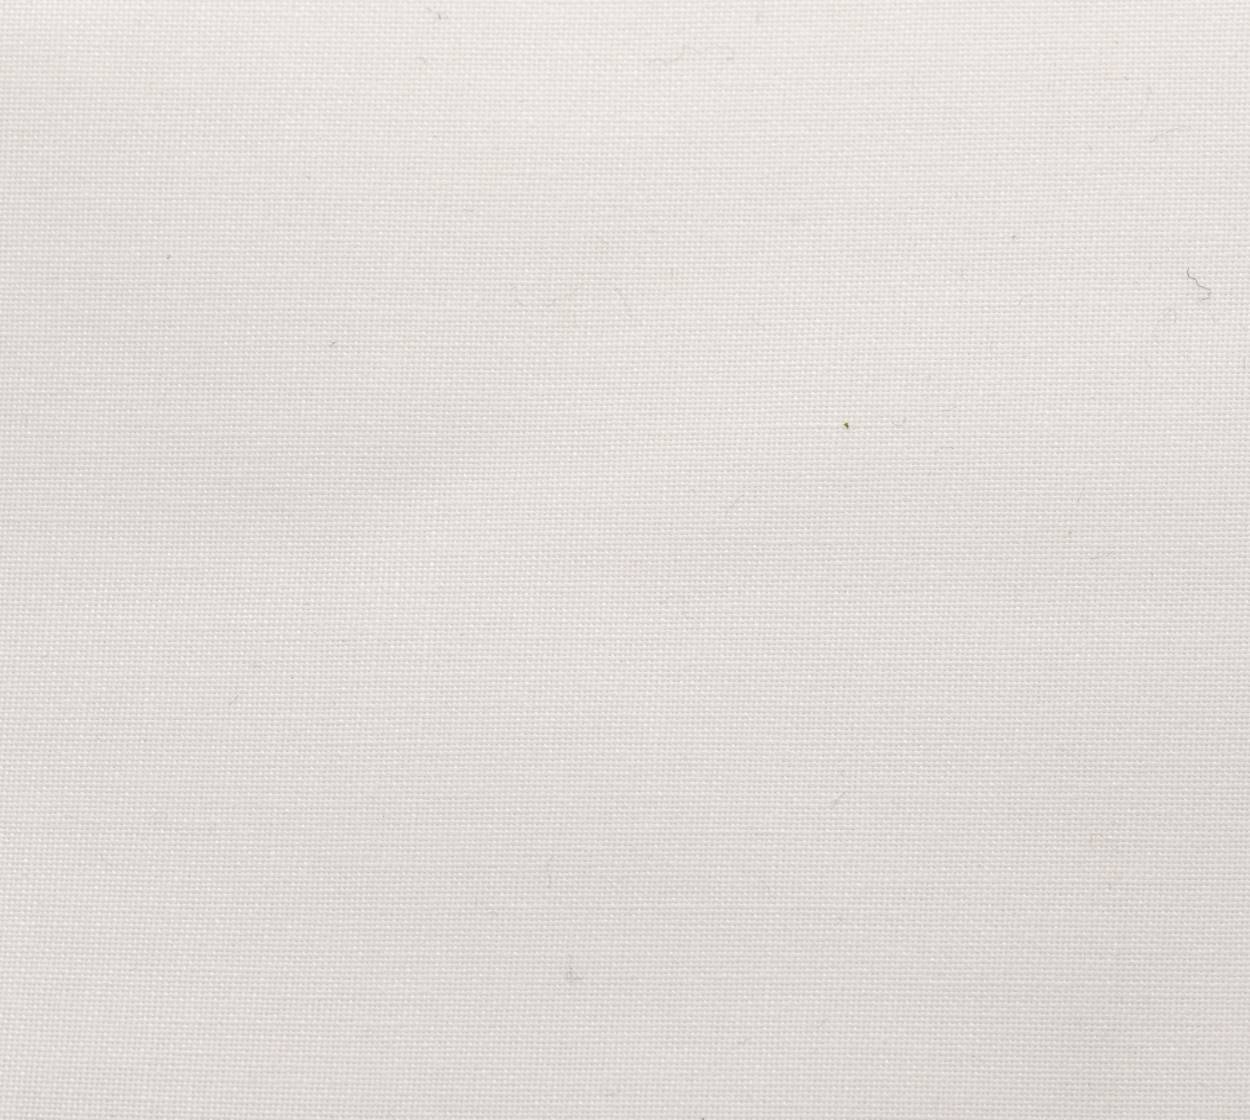 Nessel CS, weiß 303, 4,10 m breit, 6T14 im Stamm online Store München